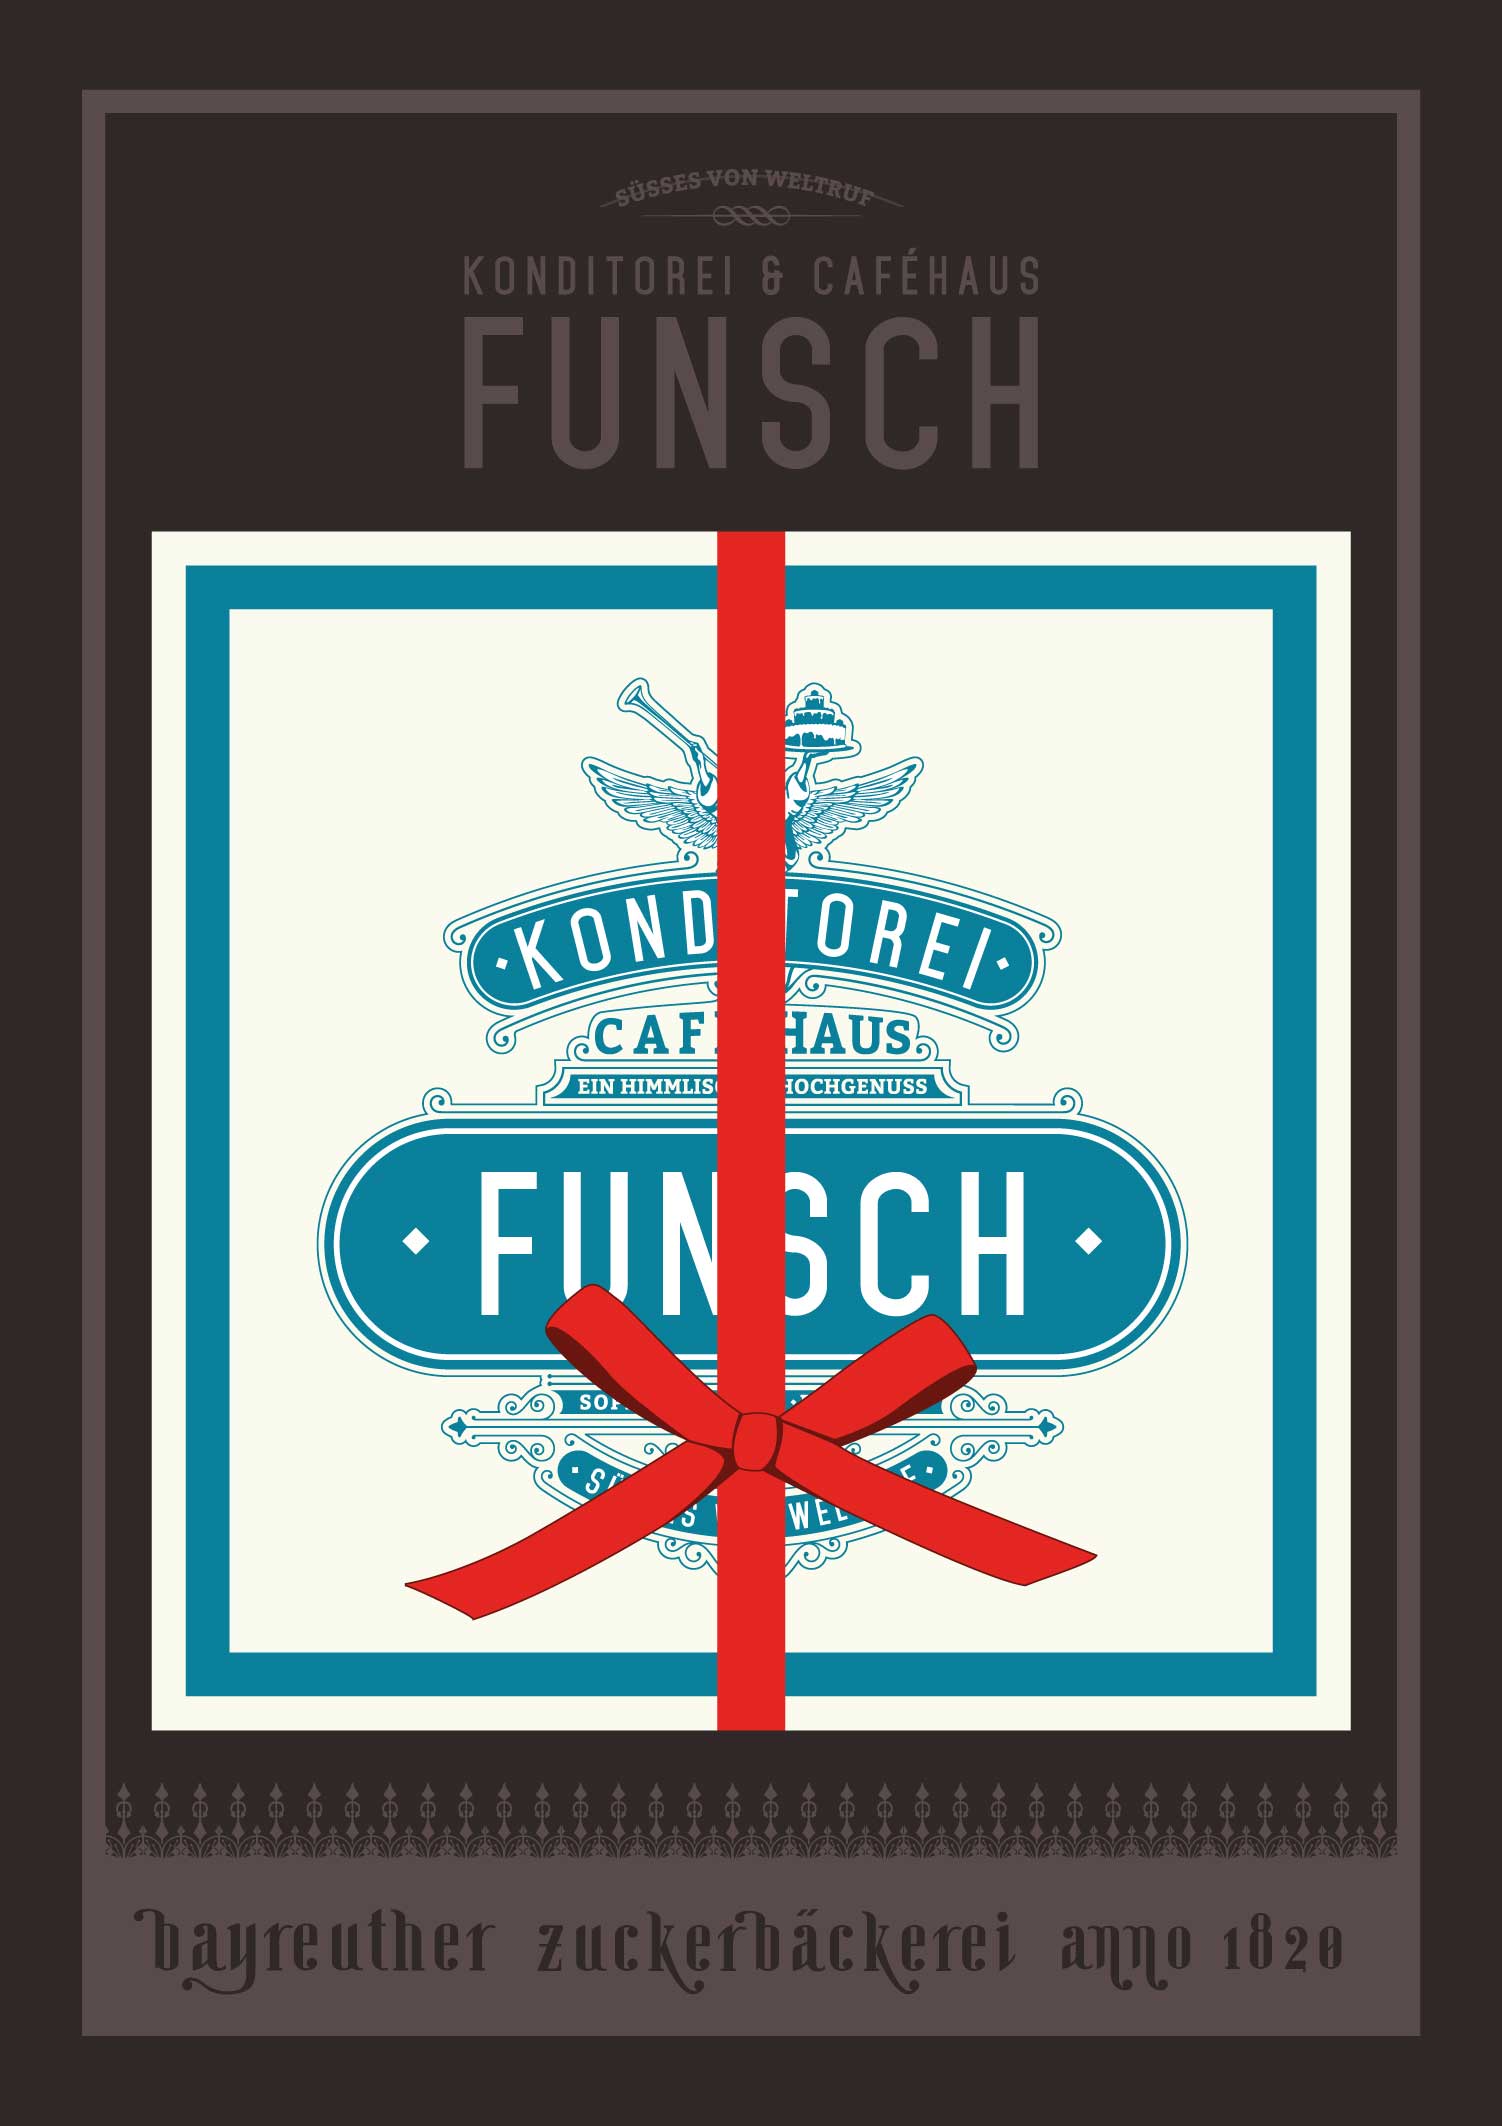 Caféhaus Funsch